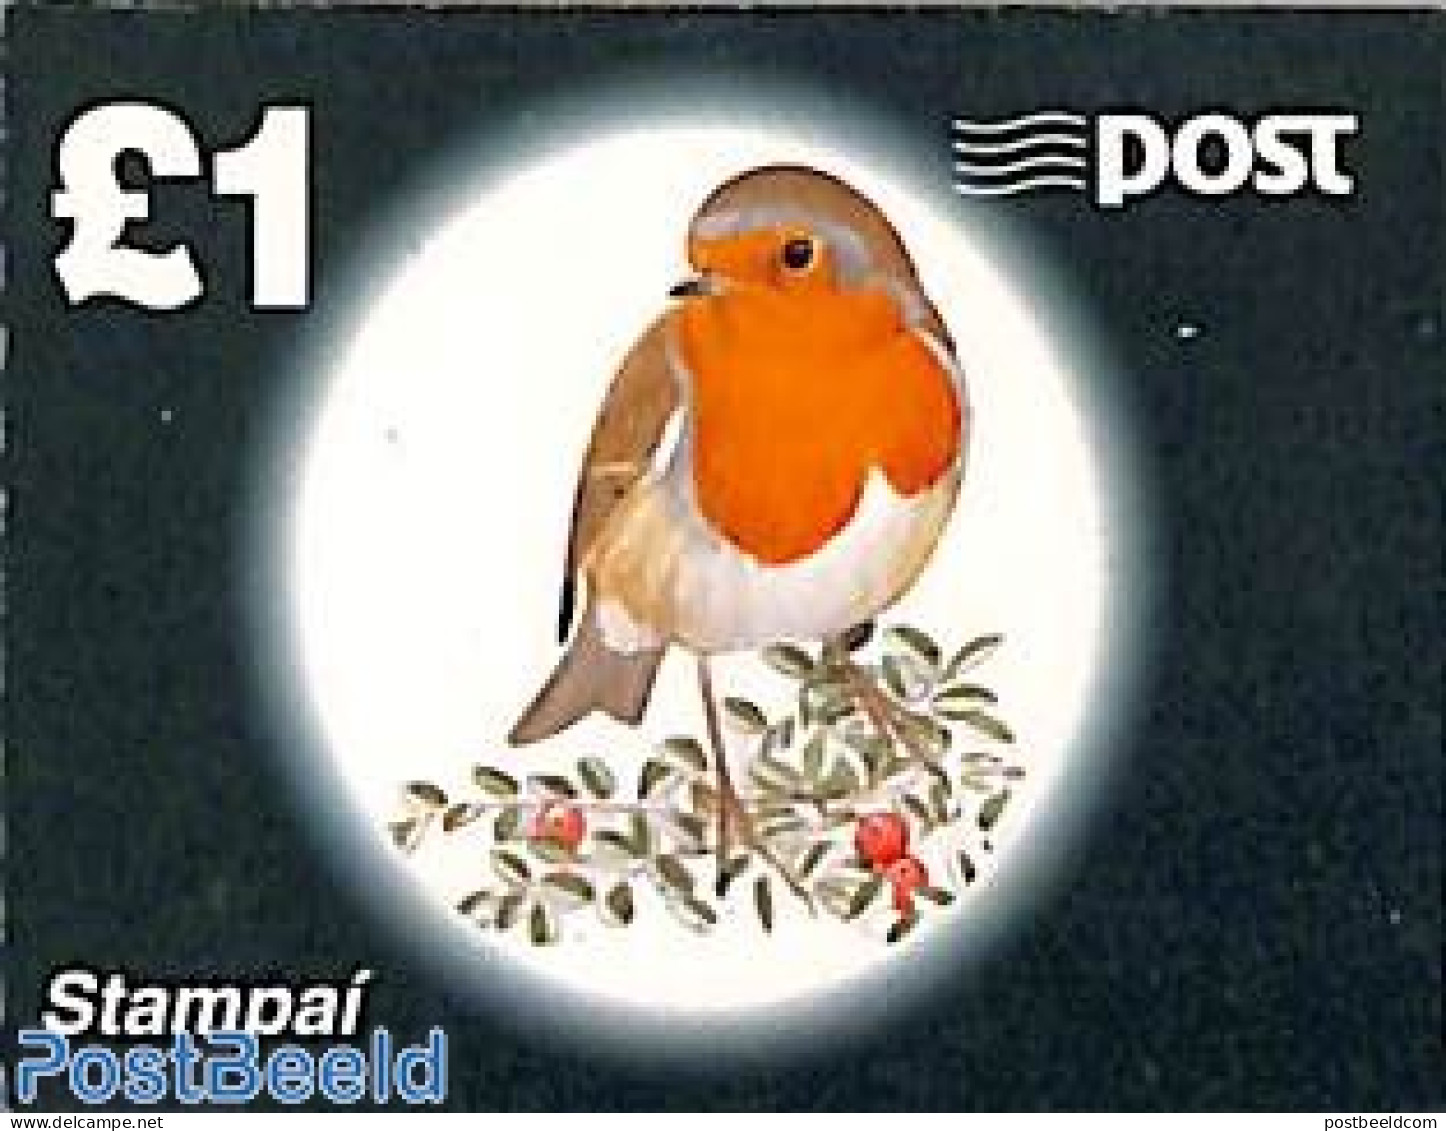 Ireland 1997 Birds Booklet, Mint NH, Nature - Birds - Stamp Booklets - Ungebraucht